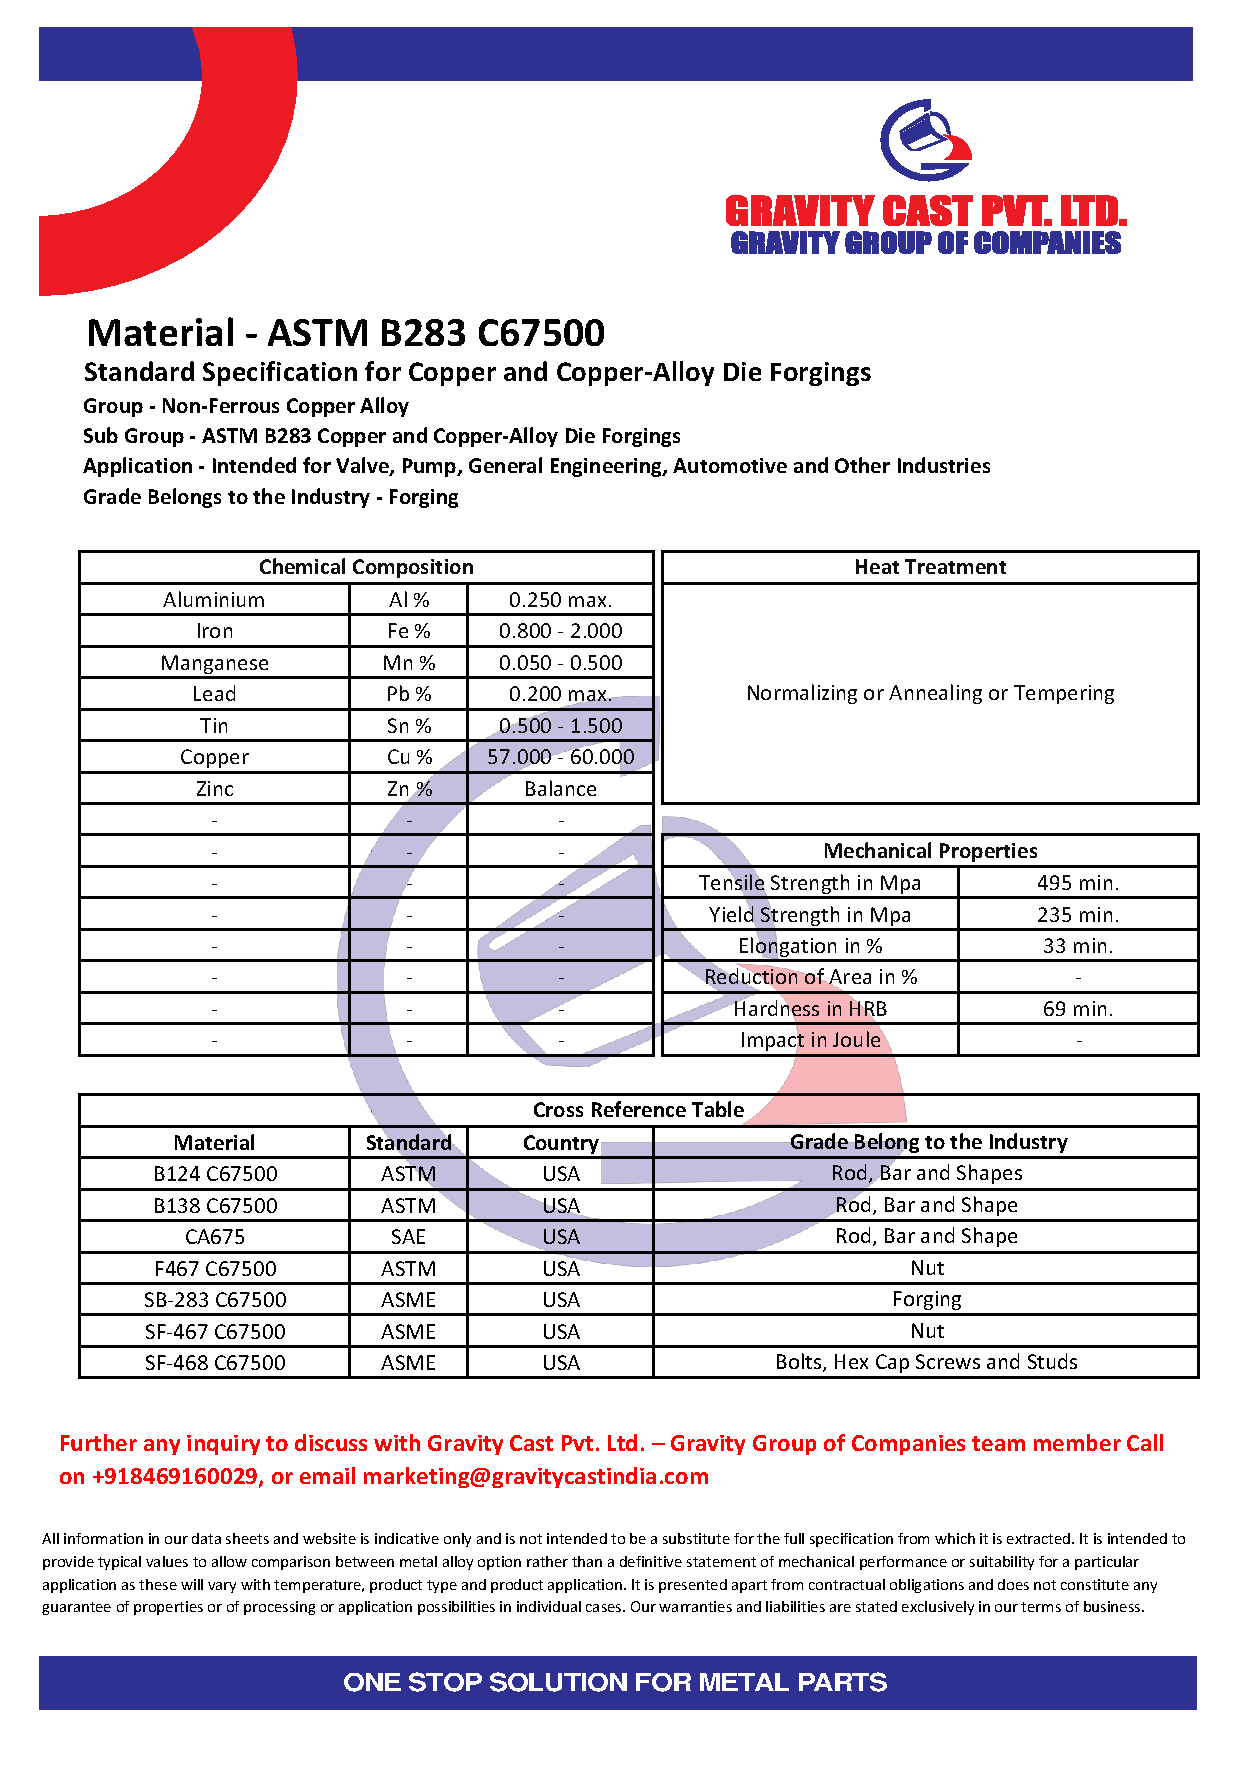 ASTM B283 C67500.pdf